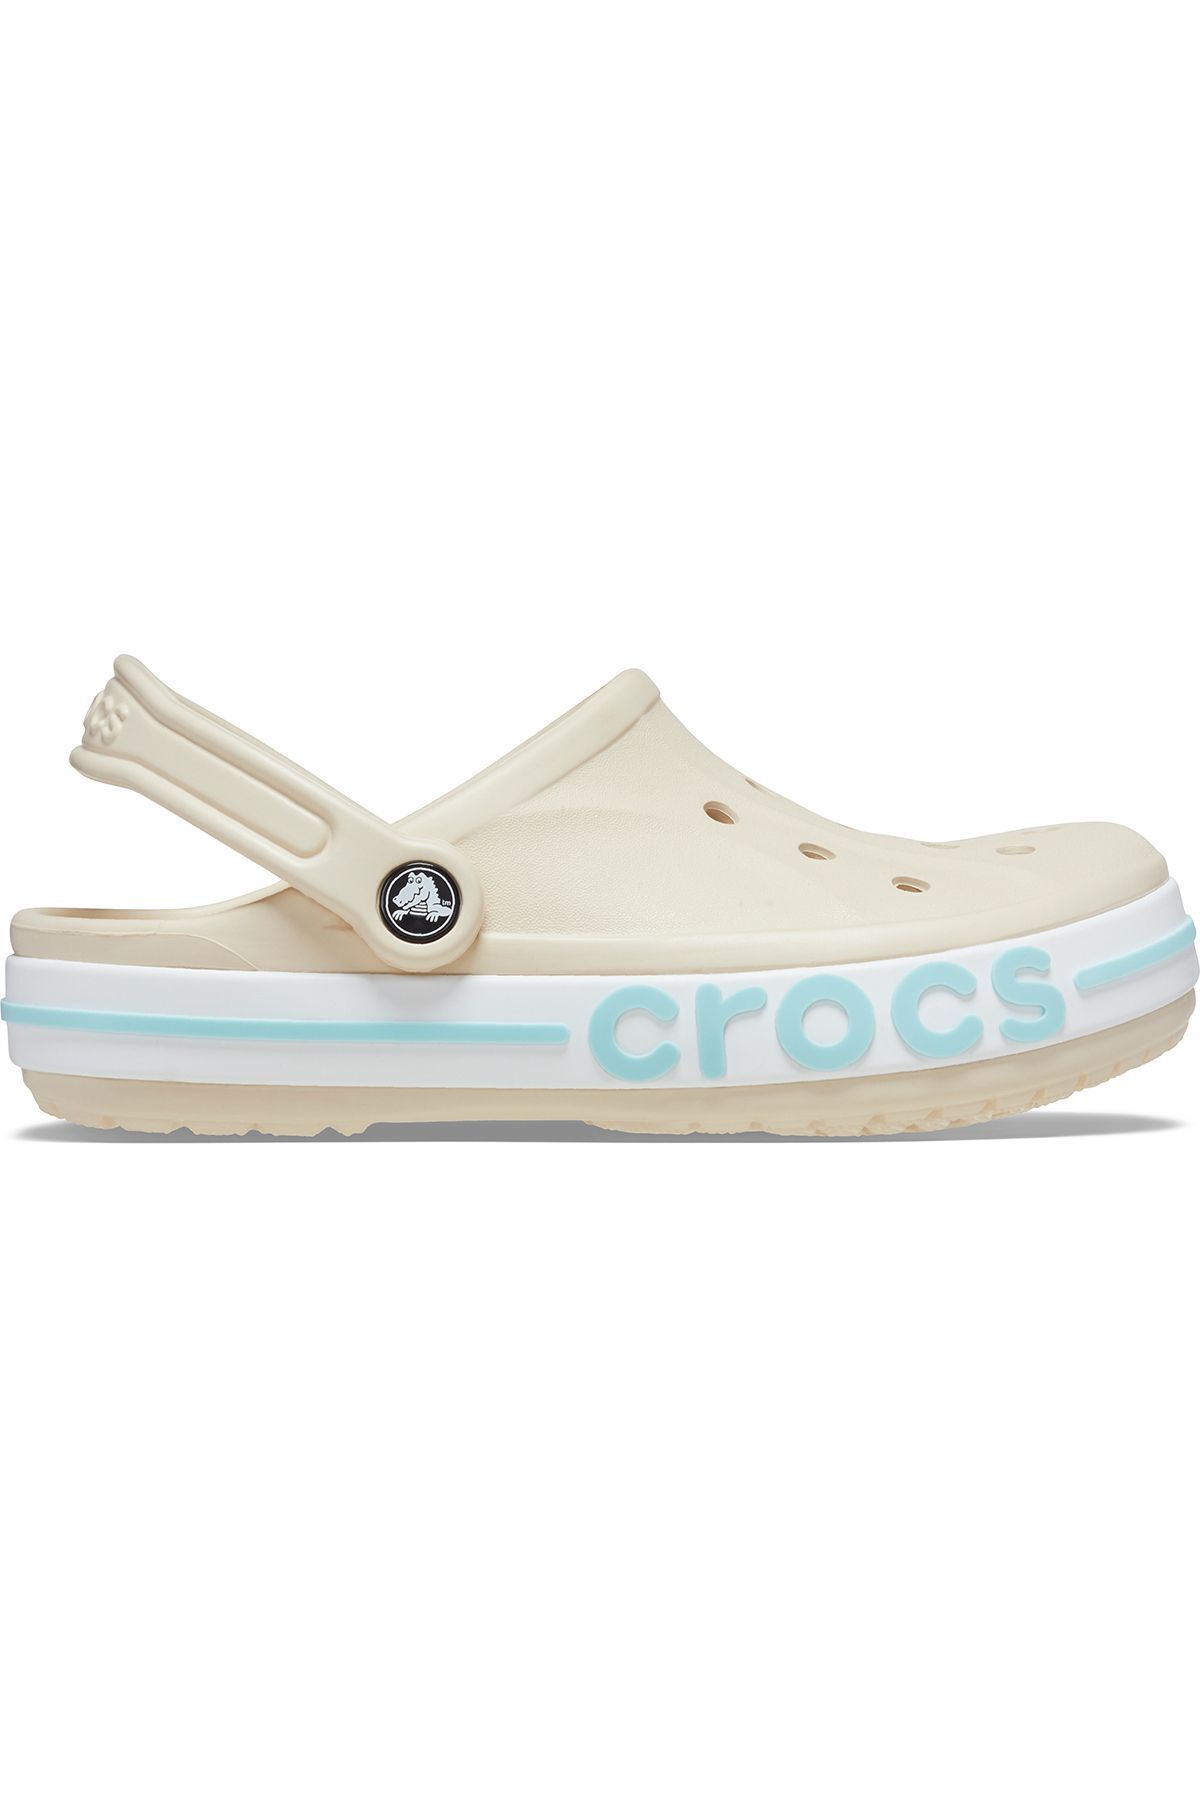 Crocs Bayaband Clog Winter White/Multi 205089-1LI